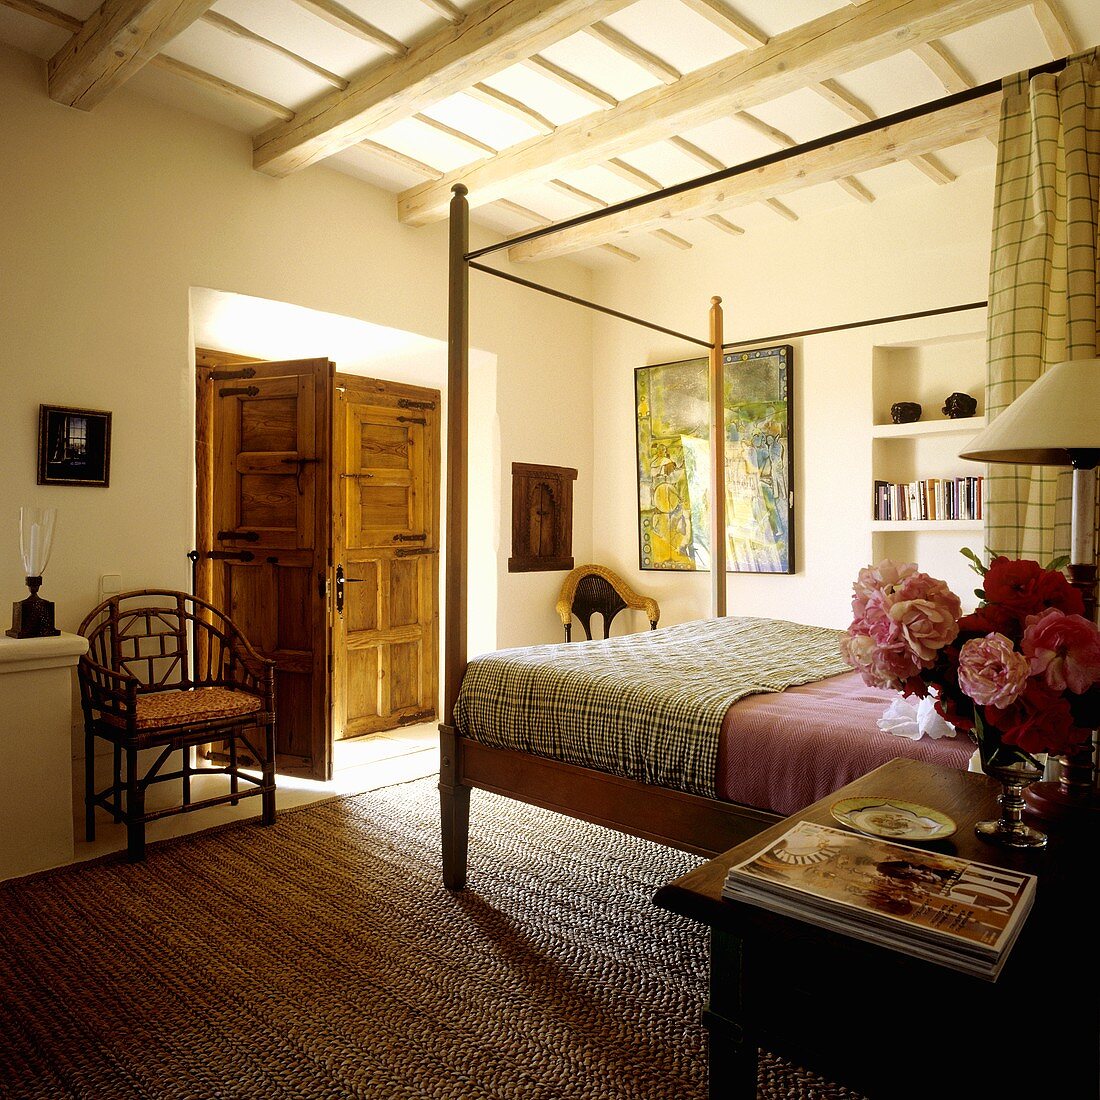 Mediterraner Schlafzimmer im Landhaus - Himmelbett auf Sisalteppich und offenstehende Holzflügeltür